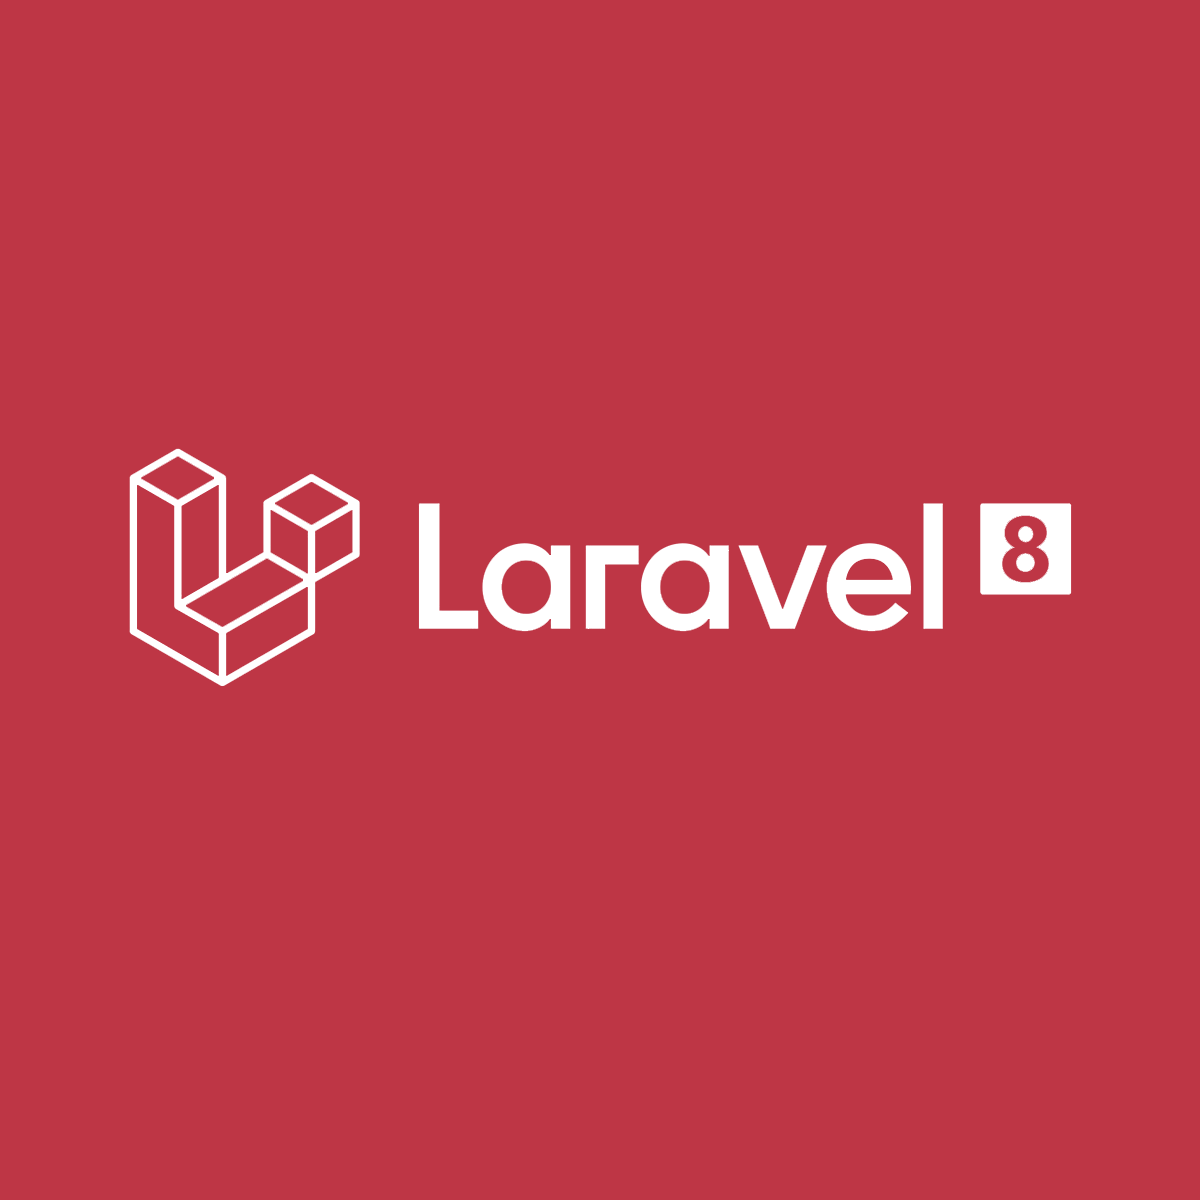 Unique laravel. Laravel. Laravel картинки. Laravel logo. Php Laravel.